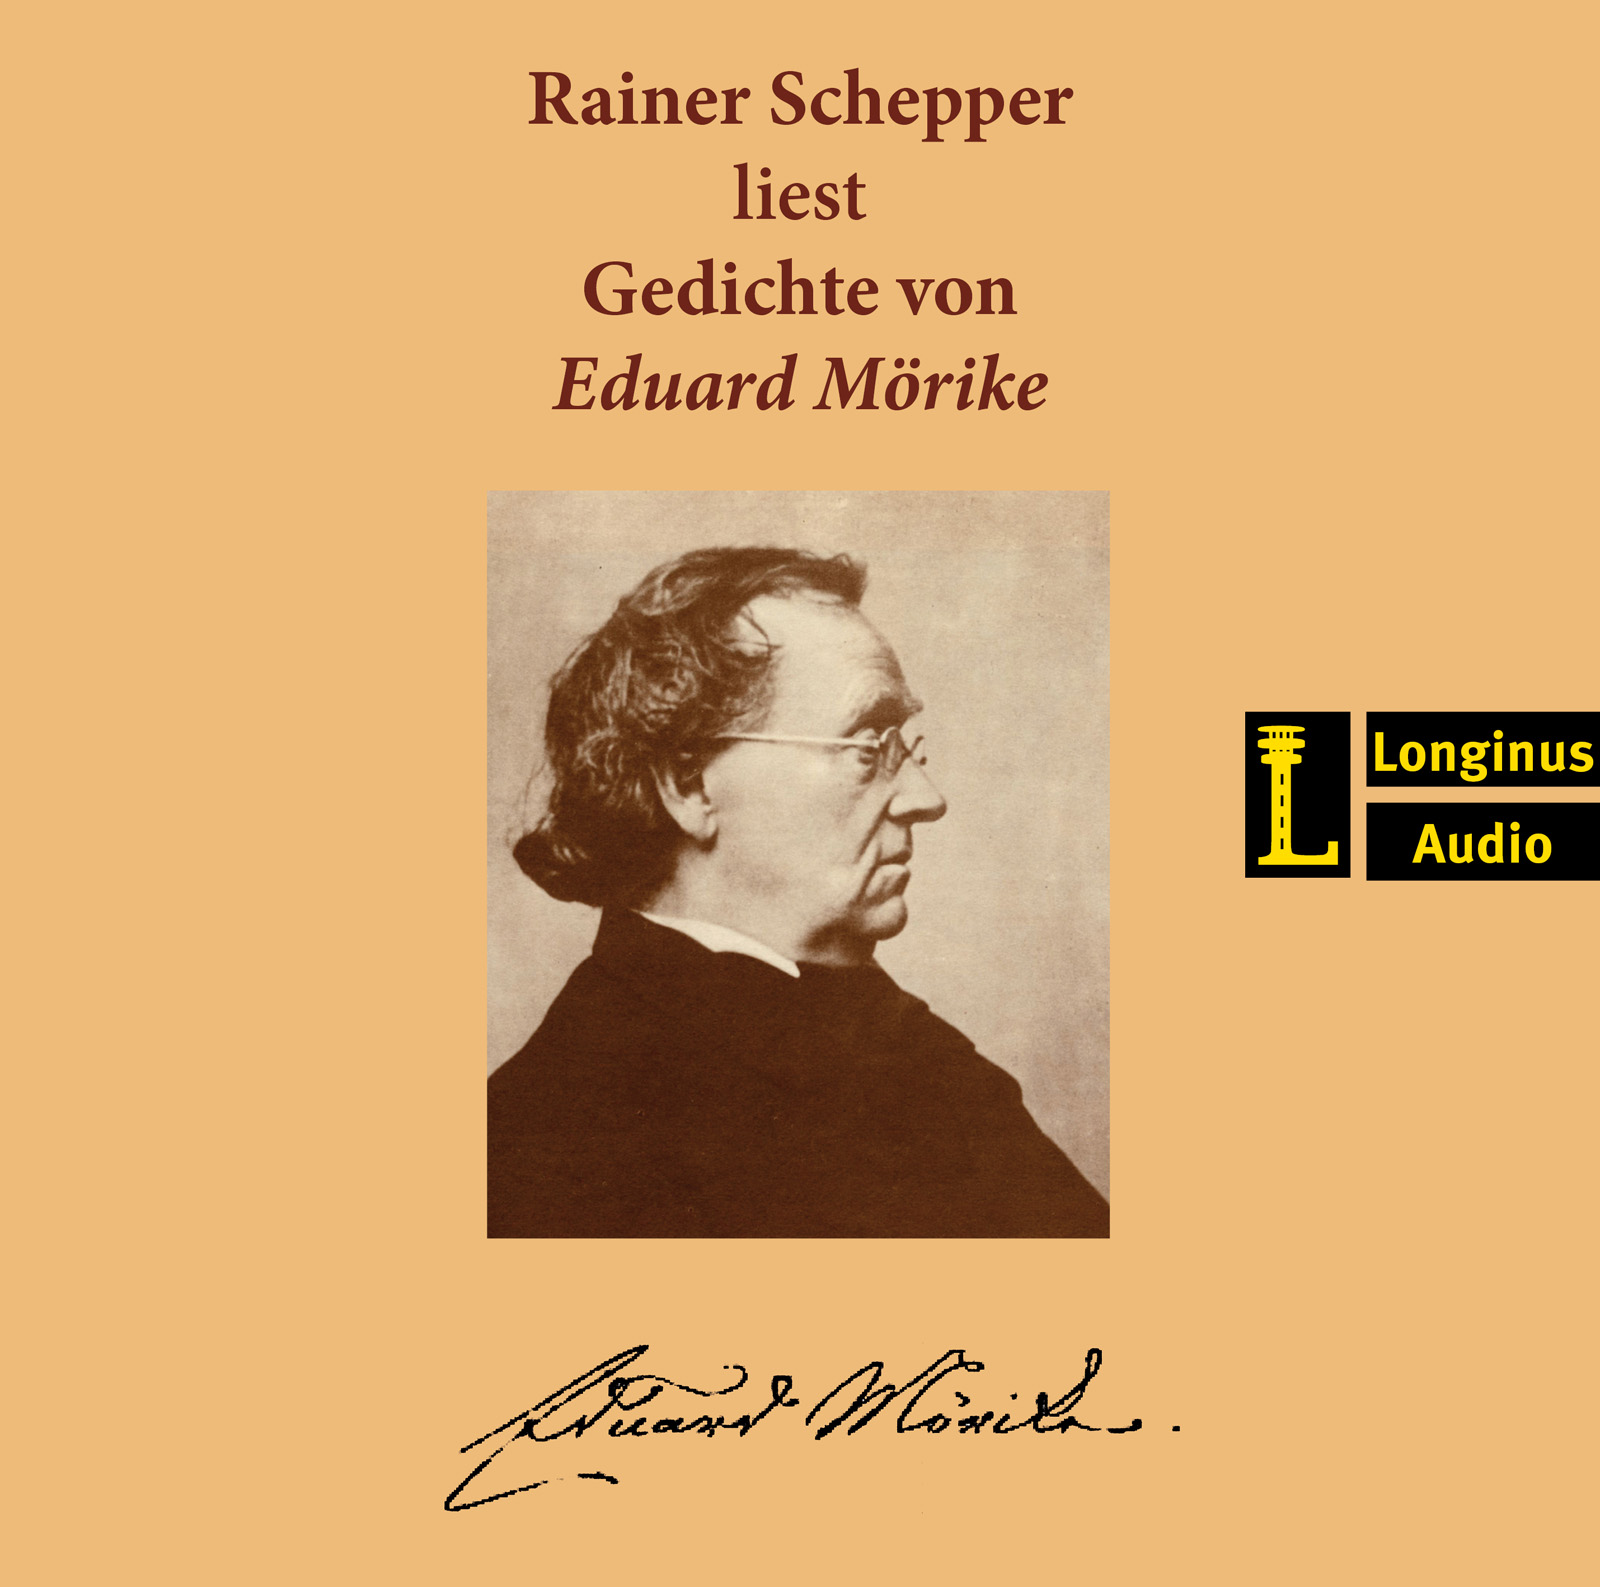 Rainer Schepper liest Gedichte von Eduard Mörike